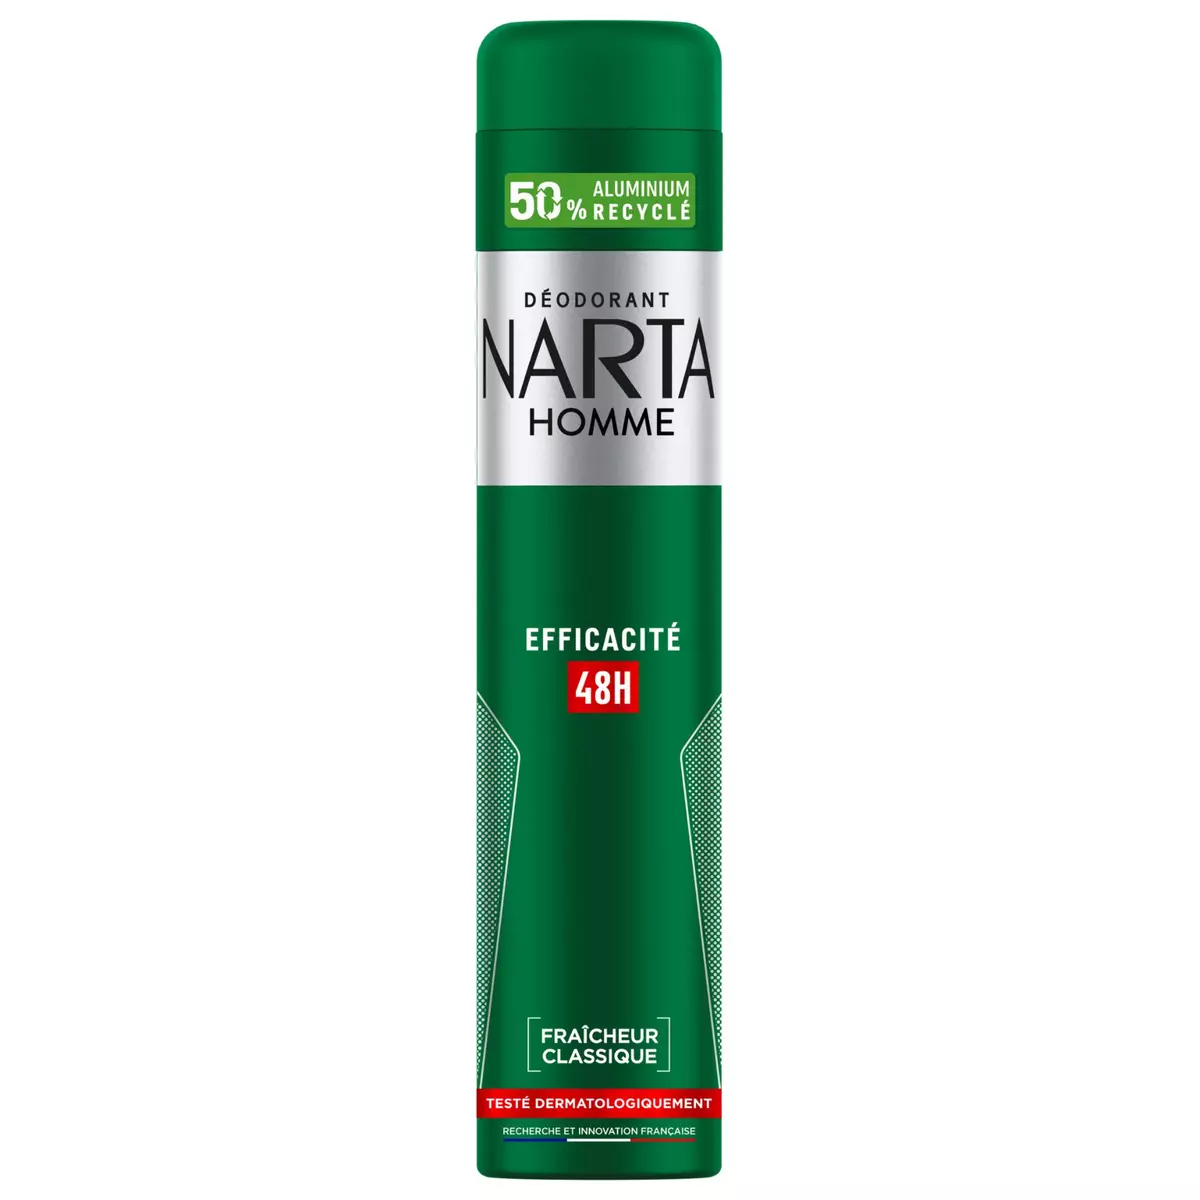 NARTA Déodorant spray 48h homme fraîcheur classique 200ml